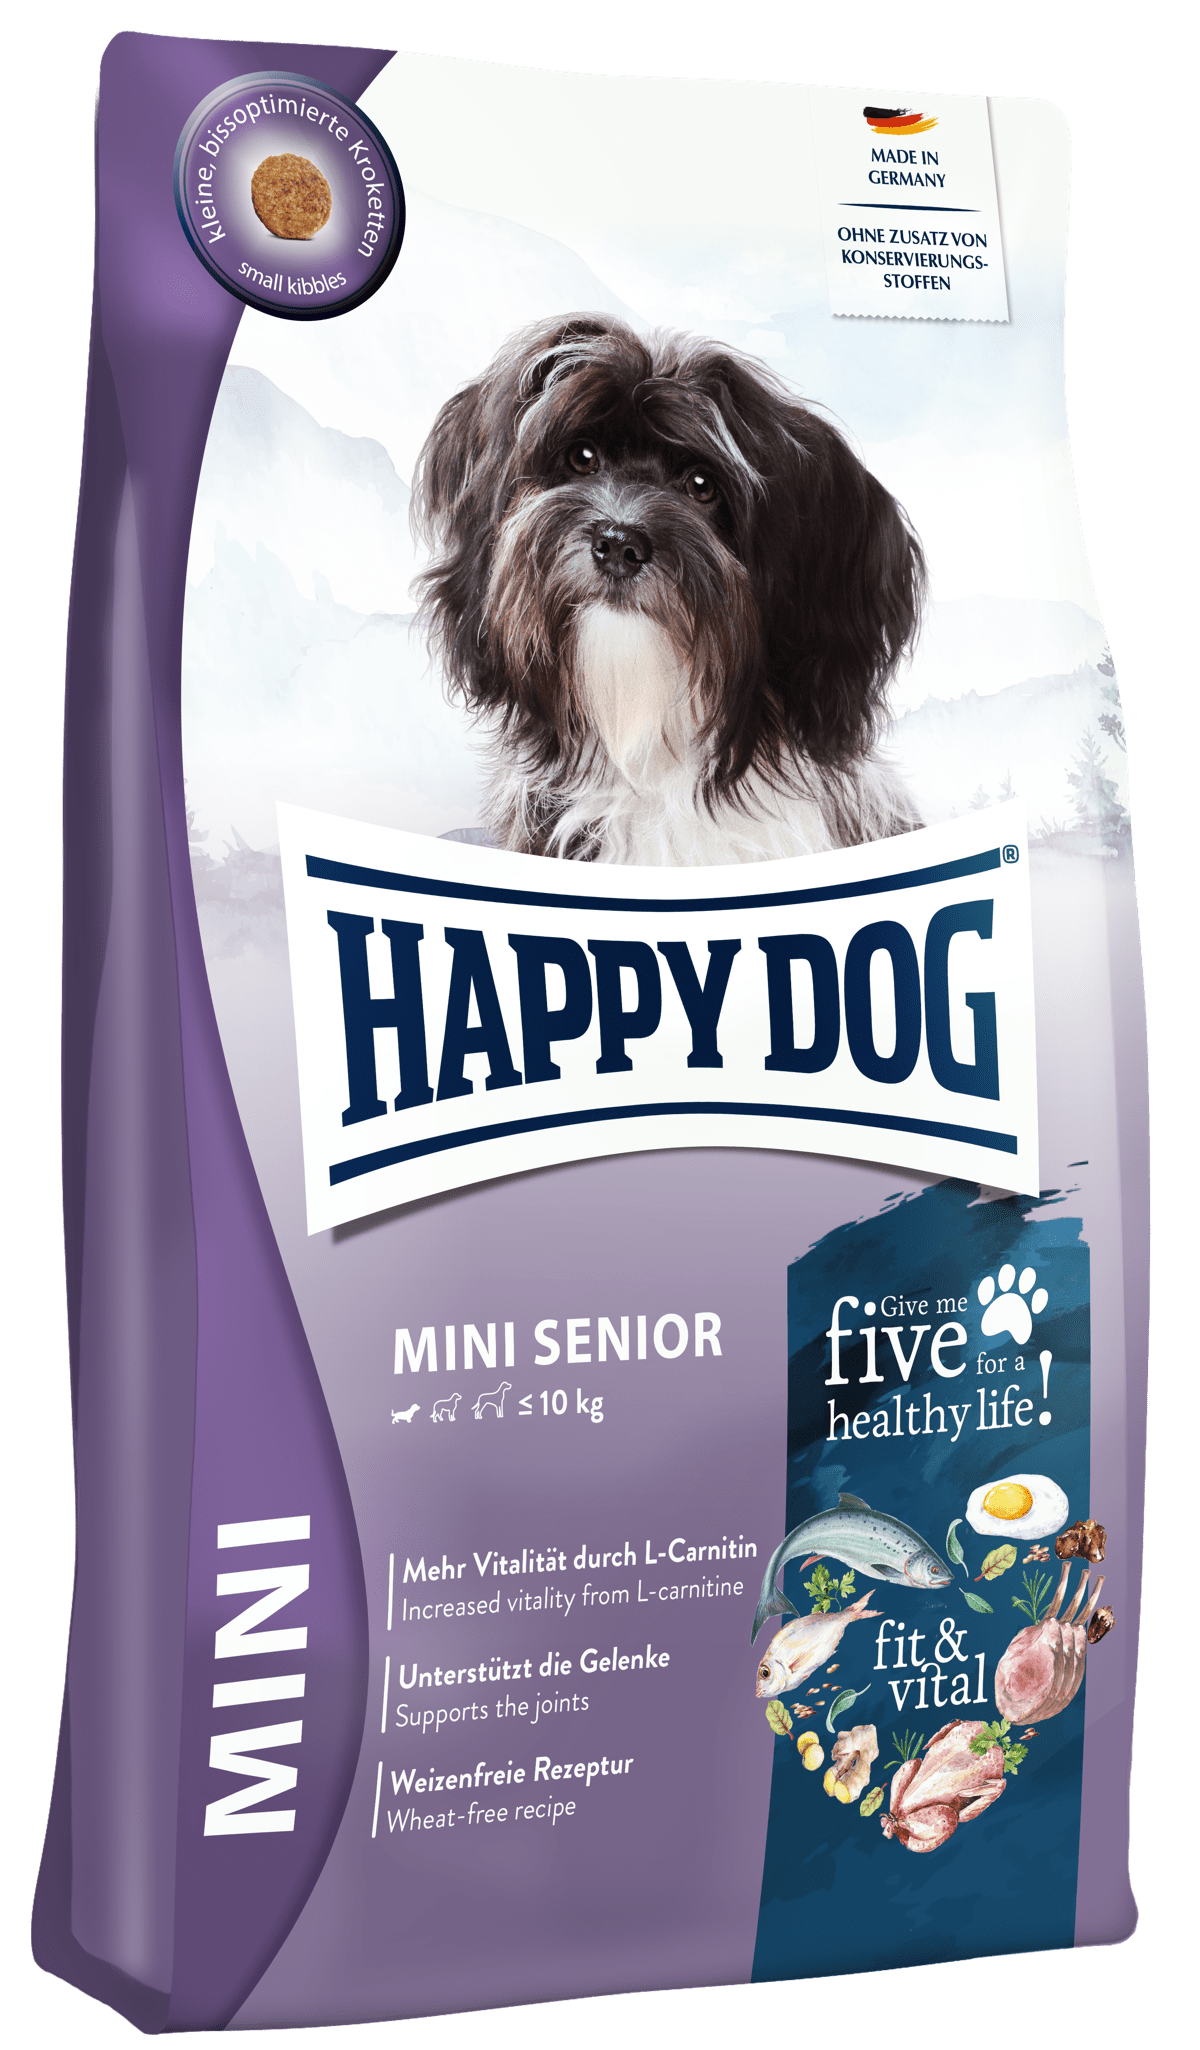 HAPPY DOG MINI SENIOR Jacket Image